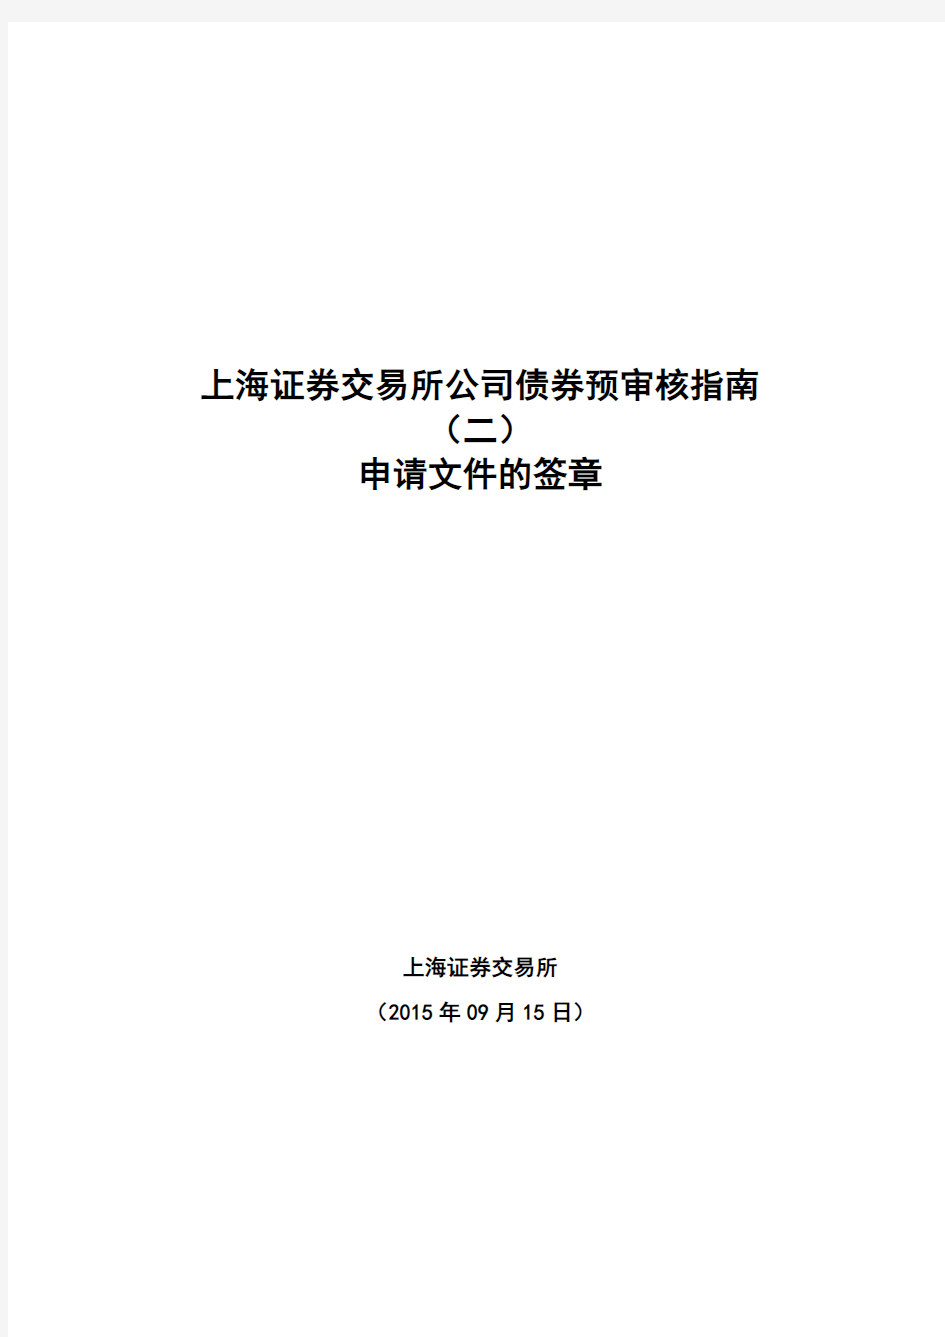 上海证券交易所公司债券预审核指南(二)申请文件的签章0915